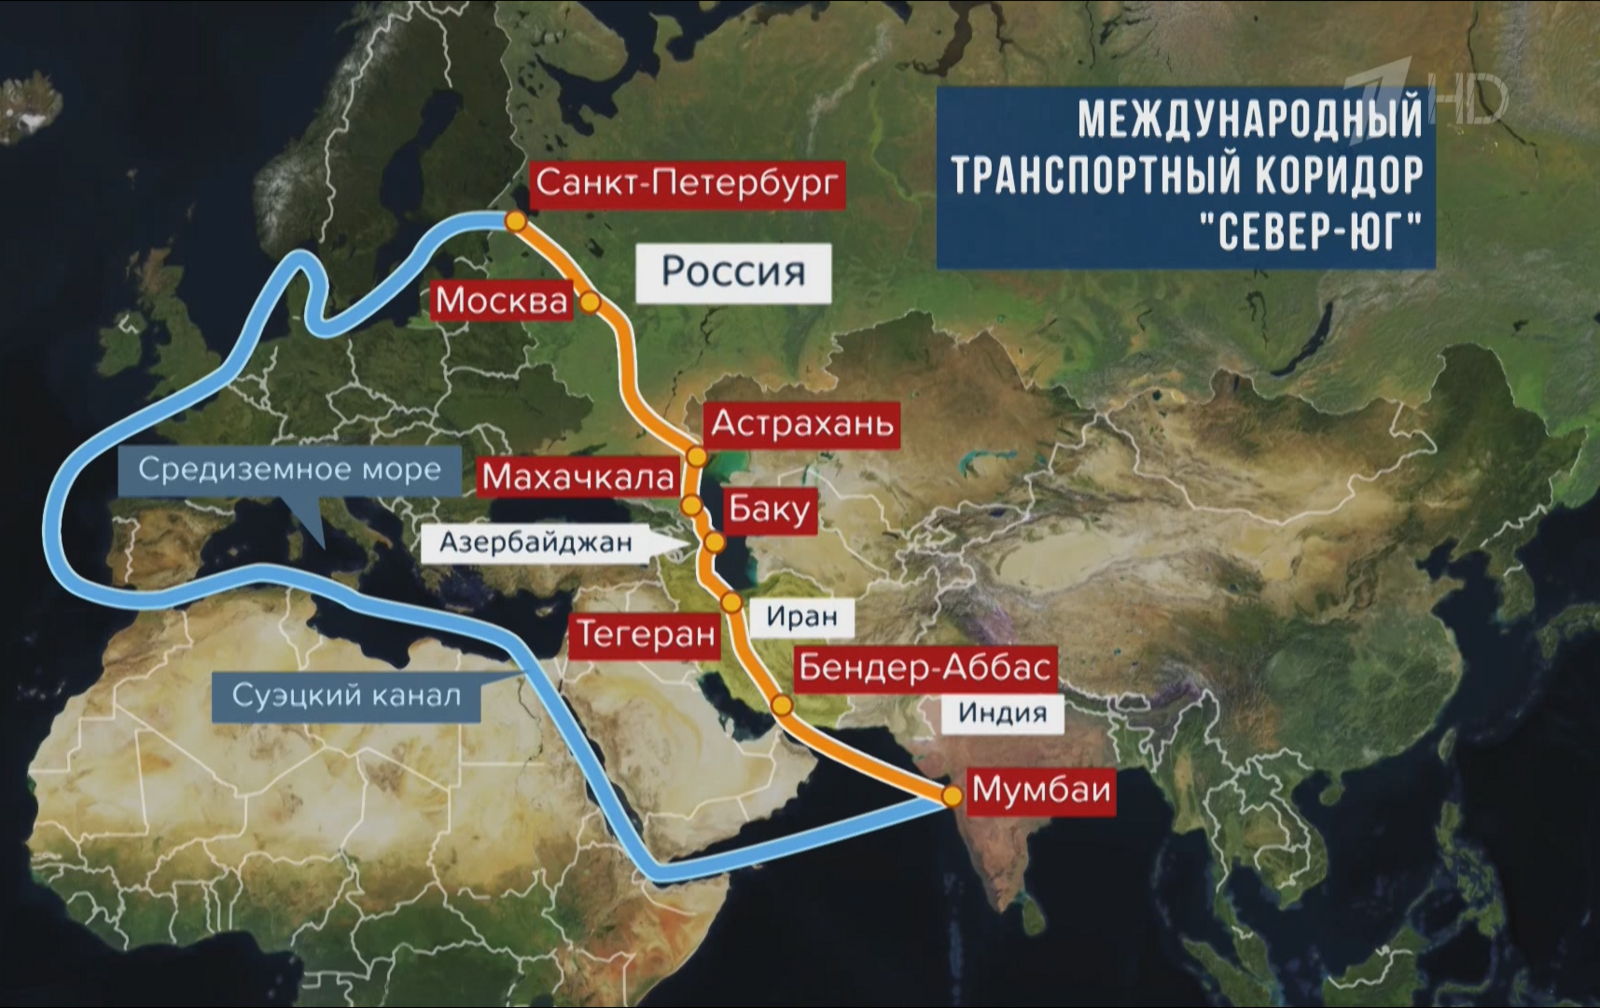 Путин заверил, что работа над развитием транспортного коридора Север - Юг продолжится